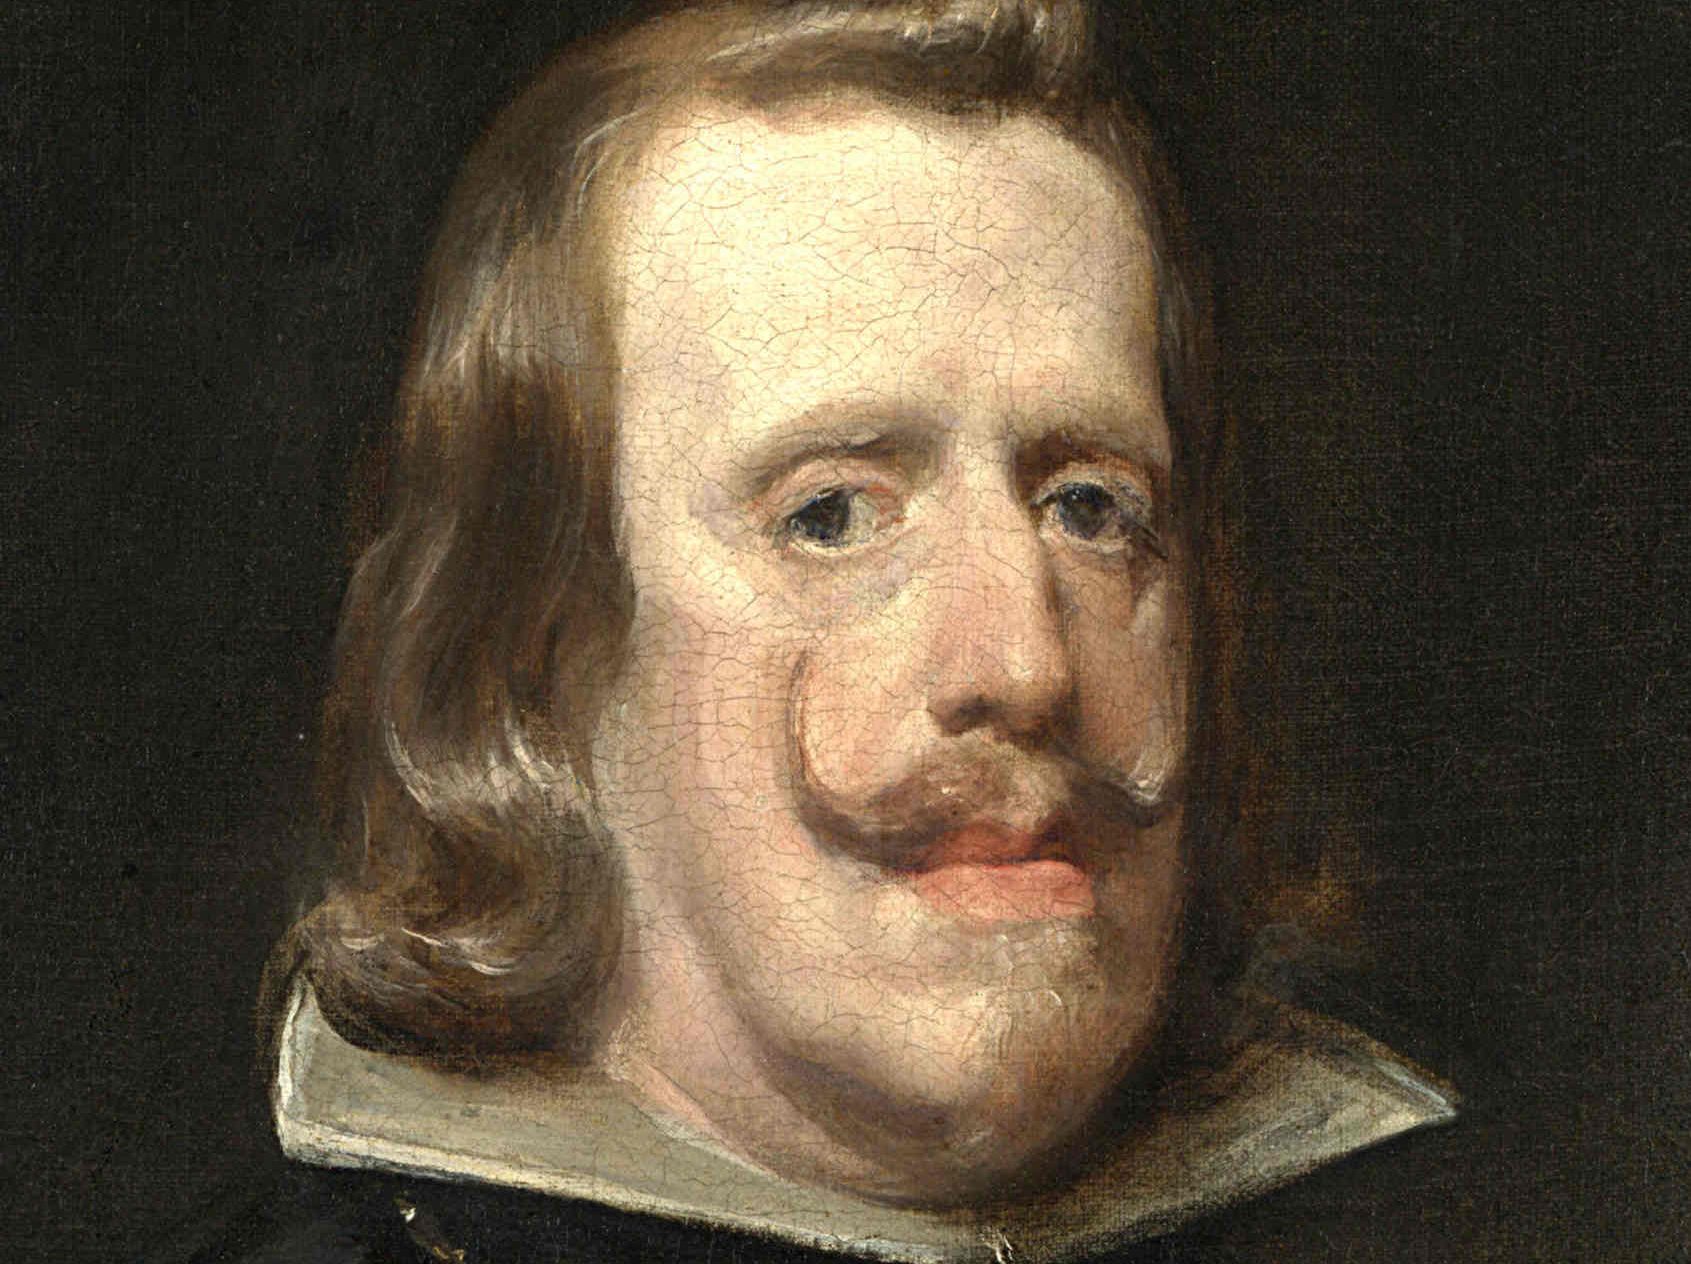 Filips IV in 1656 naar een schilderij van Diego Velazques